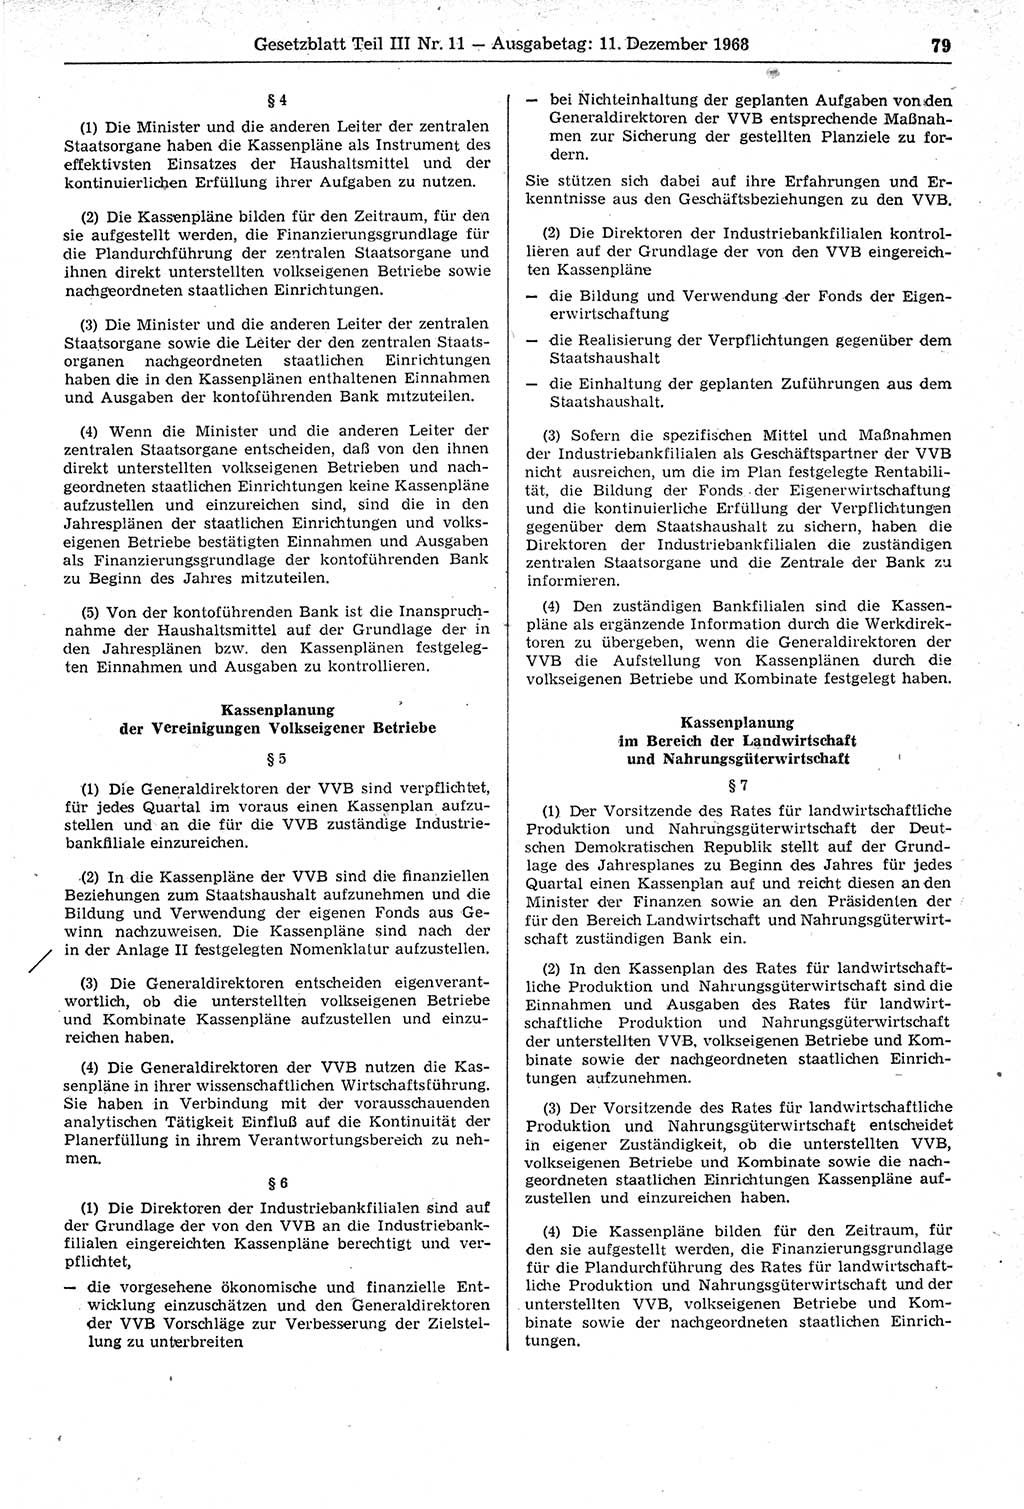 Gesetzblatt (GBl.) der Deutschen Demokratischen Republik (DDR) Teil ⅠⅠⅠ 1968, Seite 79 (GBl. DDR ⅠⅠⅠ 1968, S. 79)